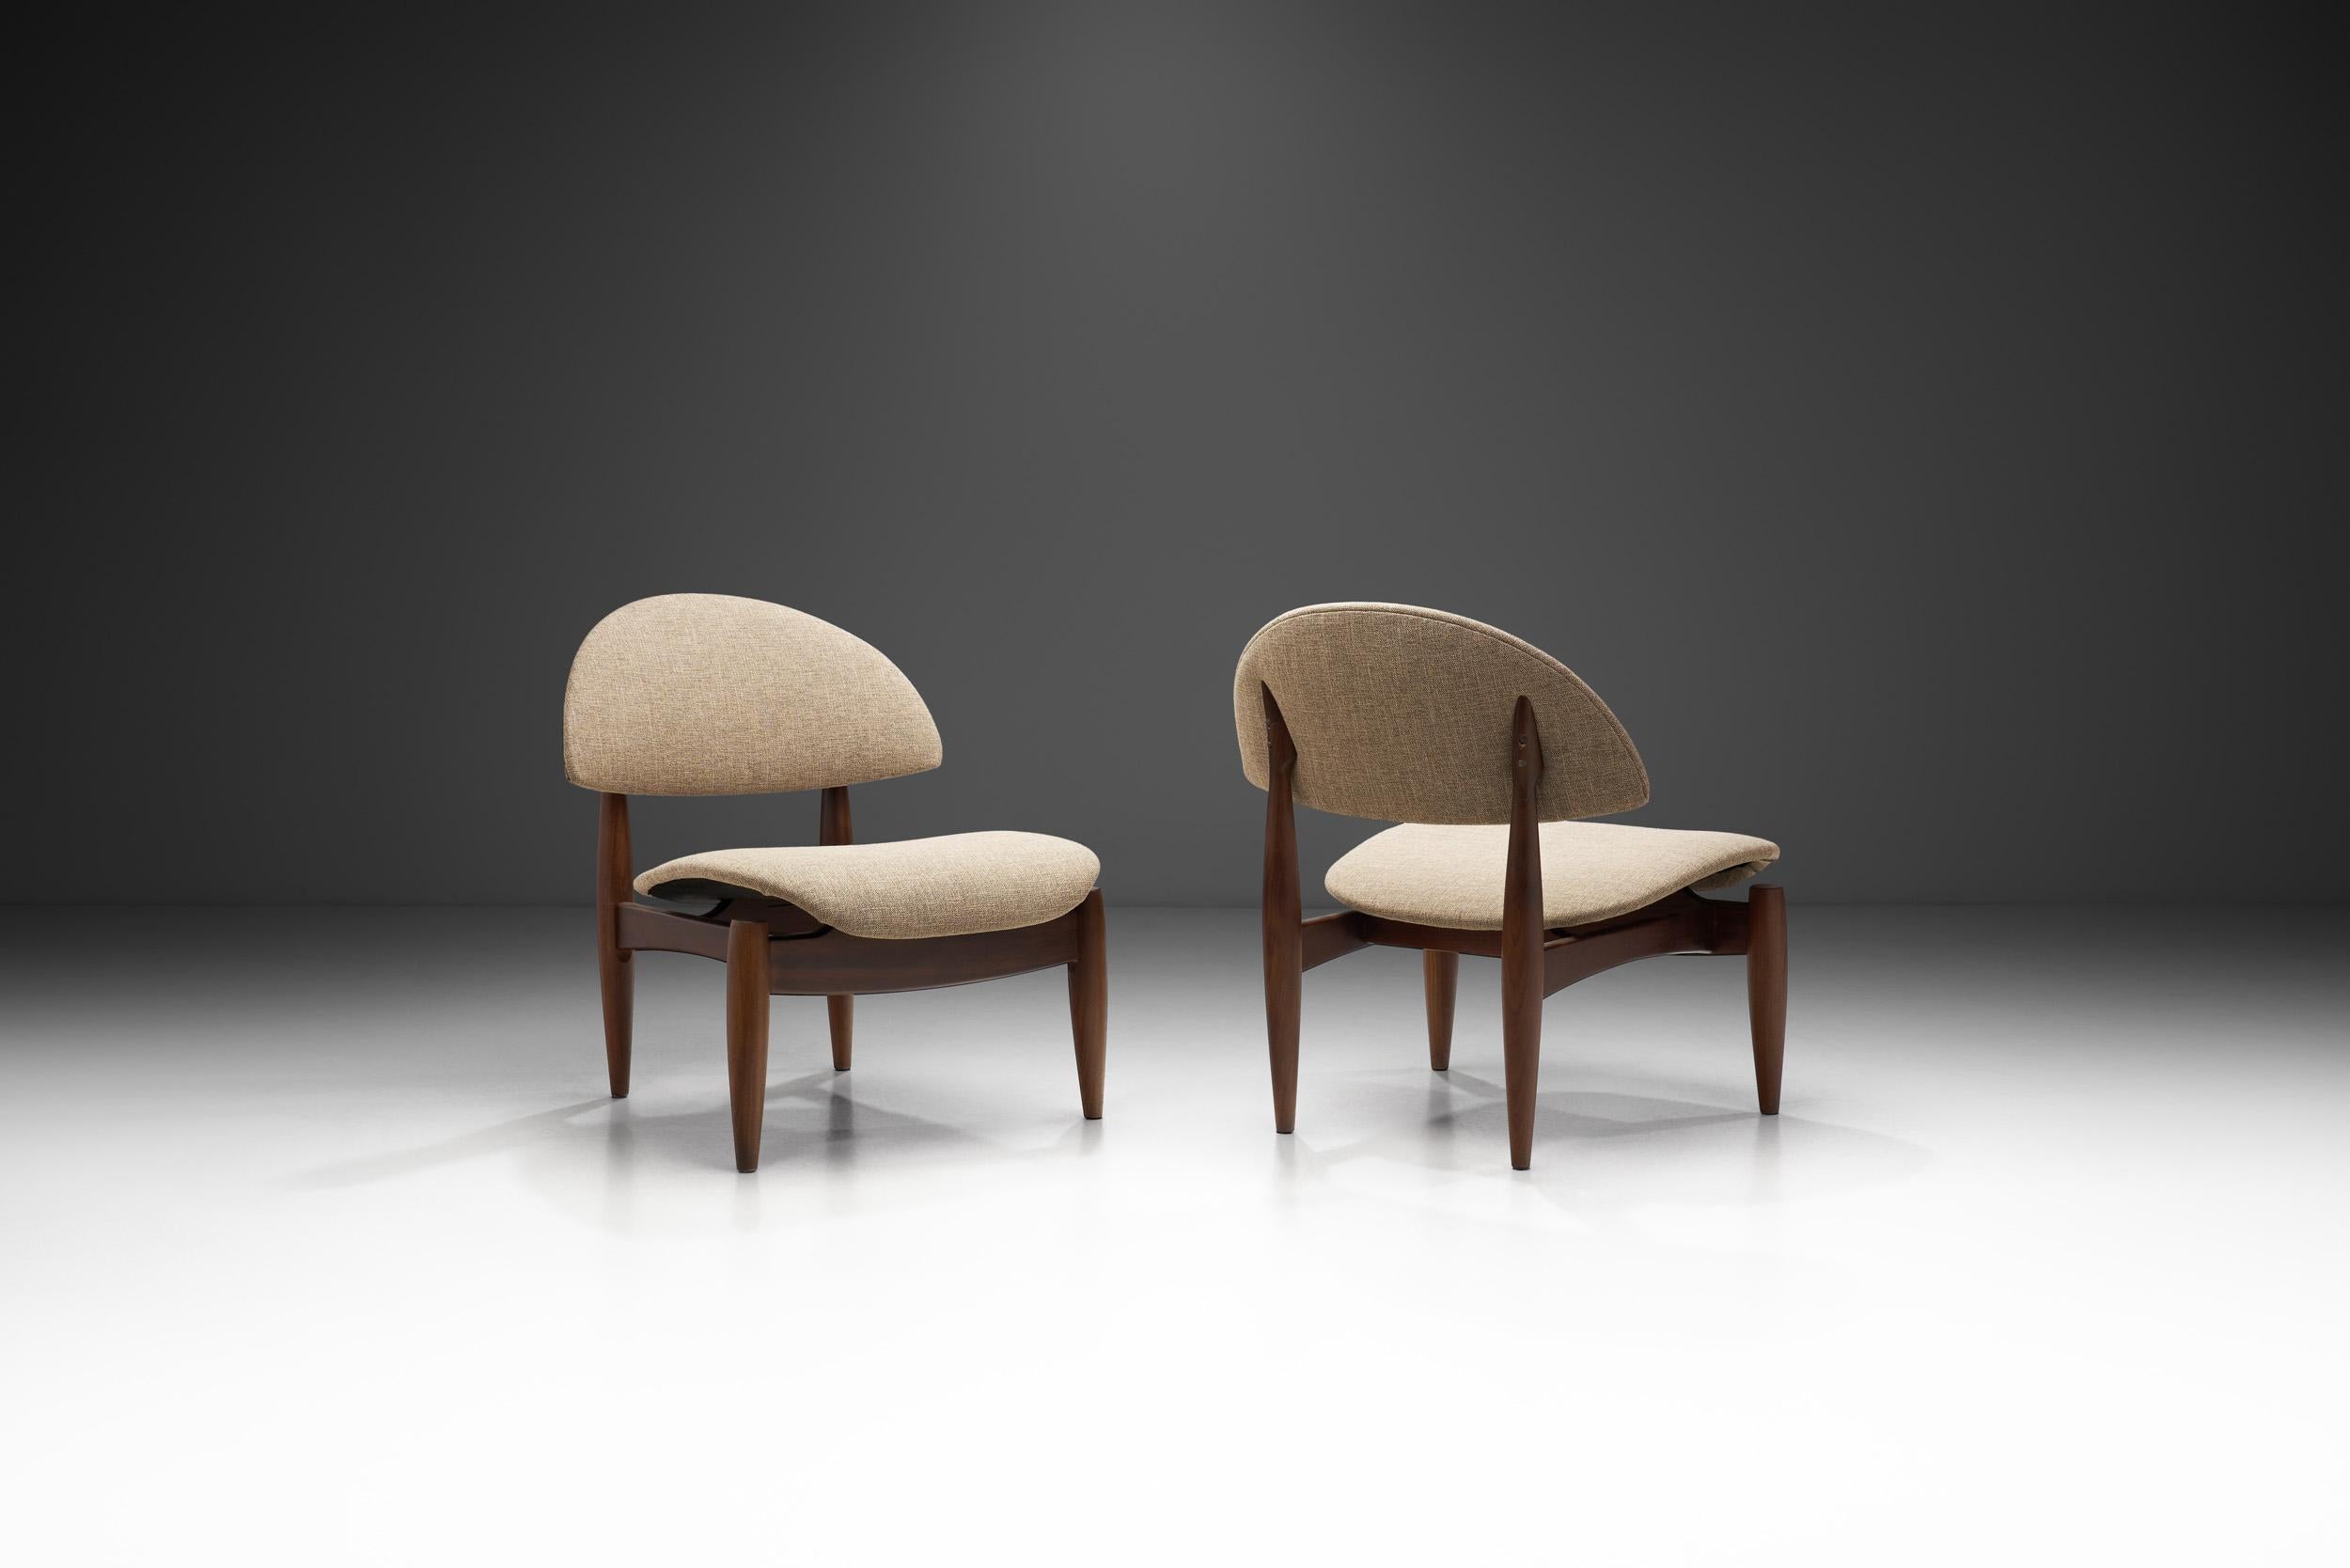 Ces chaises artistiques ont un aspect sculptural que l'on qualifie souvent d'